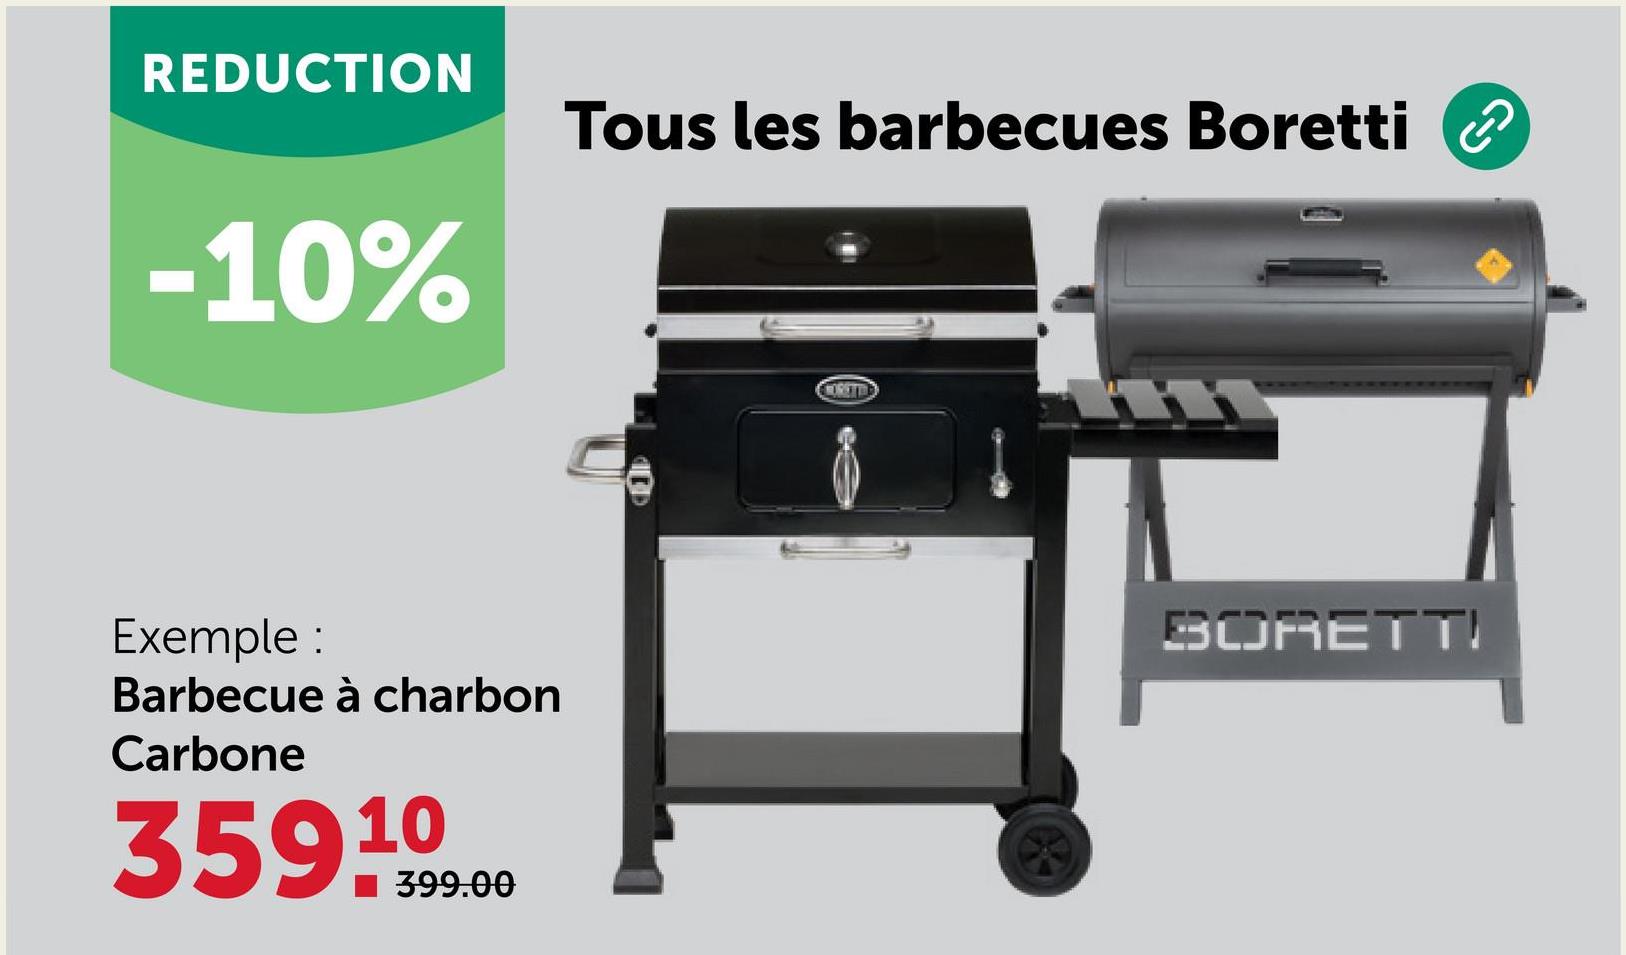 REDUCTION
-10%
Tous les barbecues Boretti
Exemple :
Barbecue à charbon
Carbone
359 1099.00
■399.00
MORETTE
BORETT!